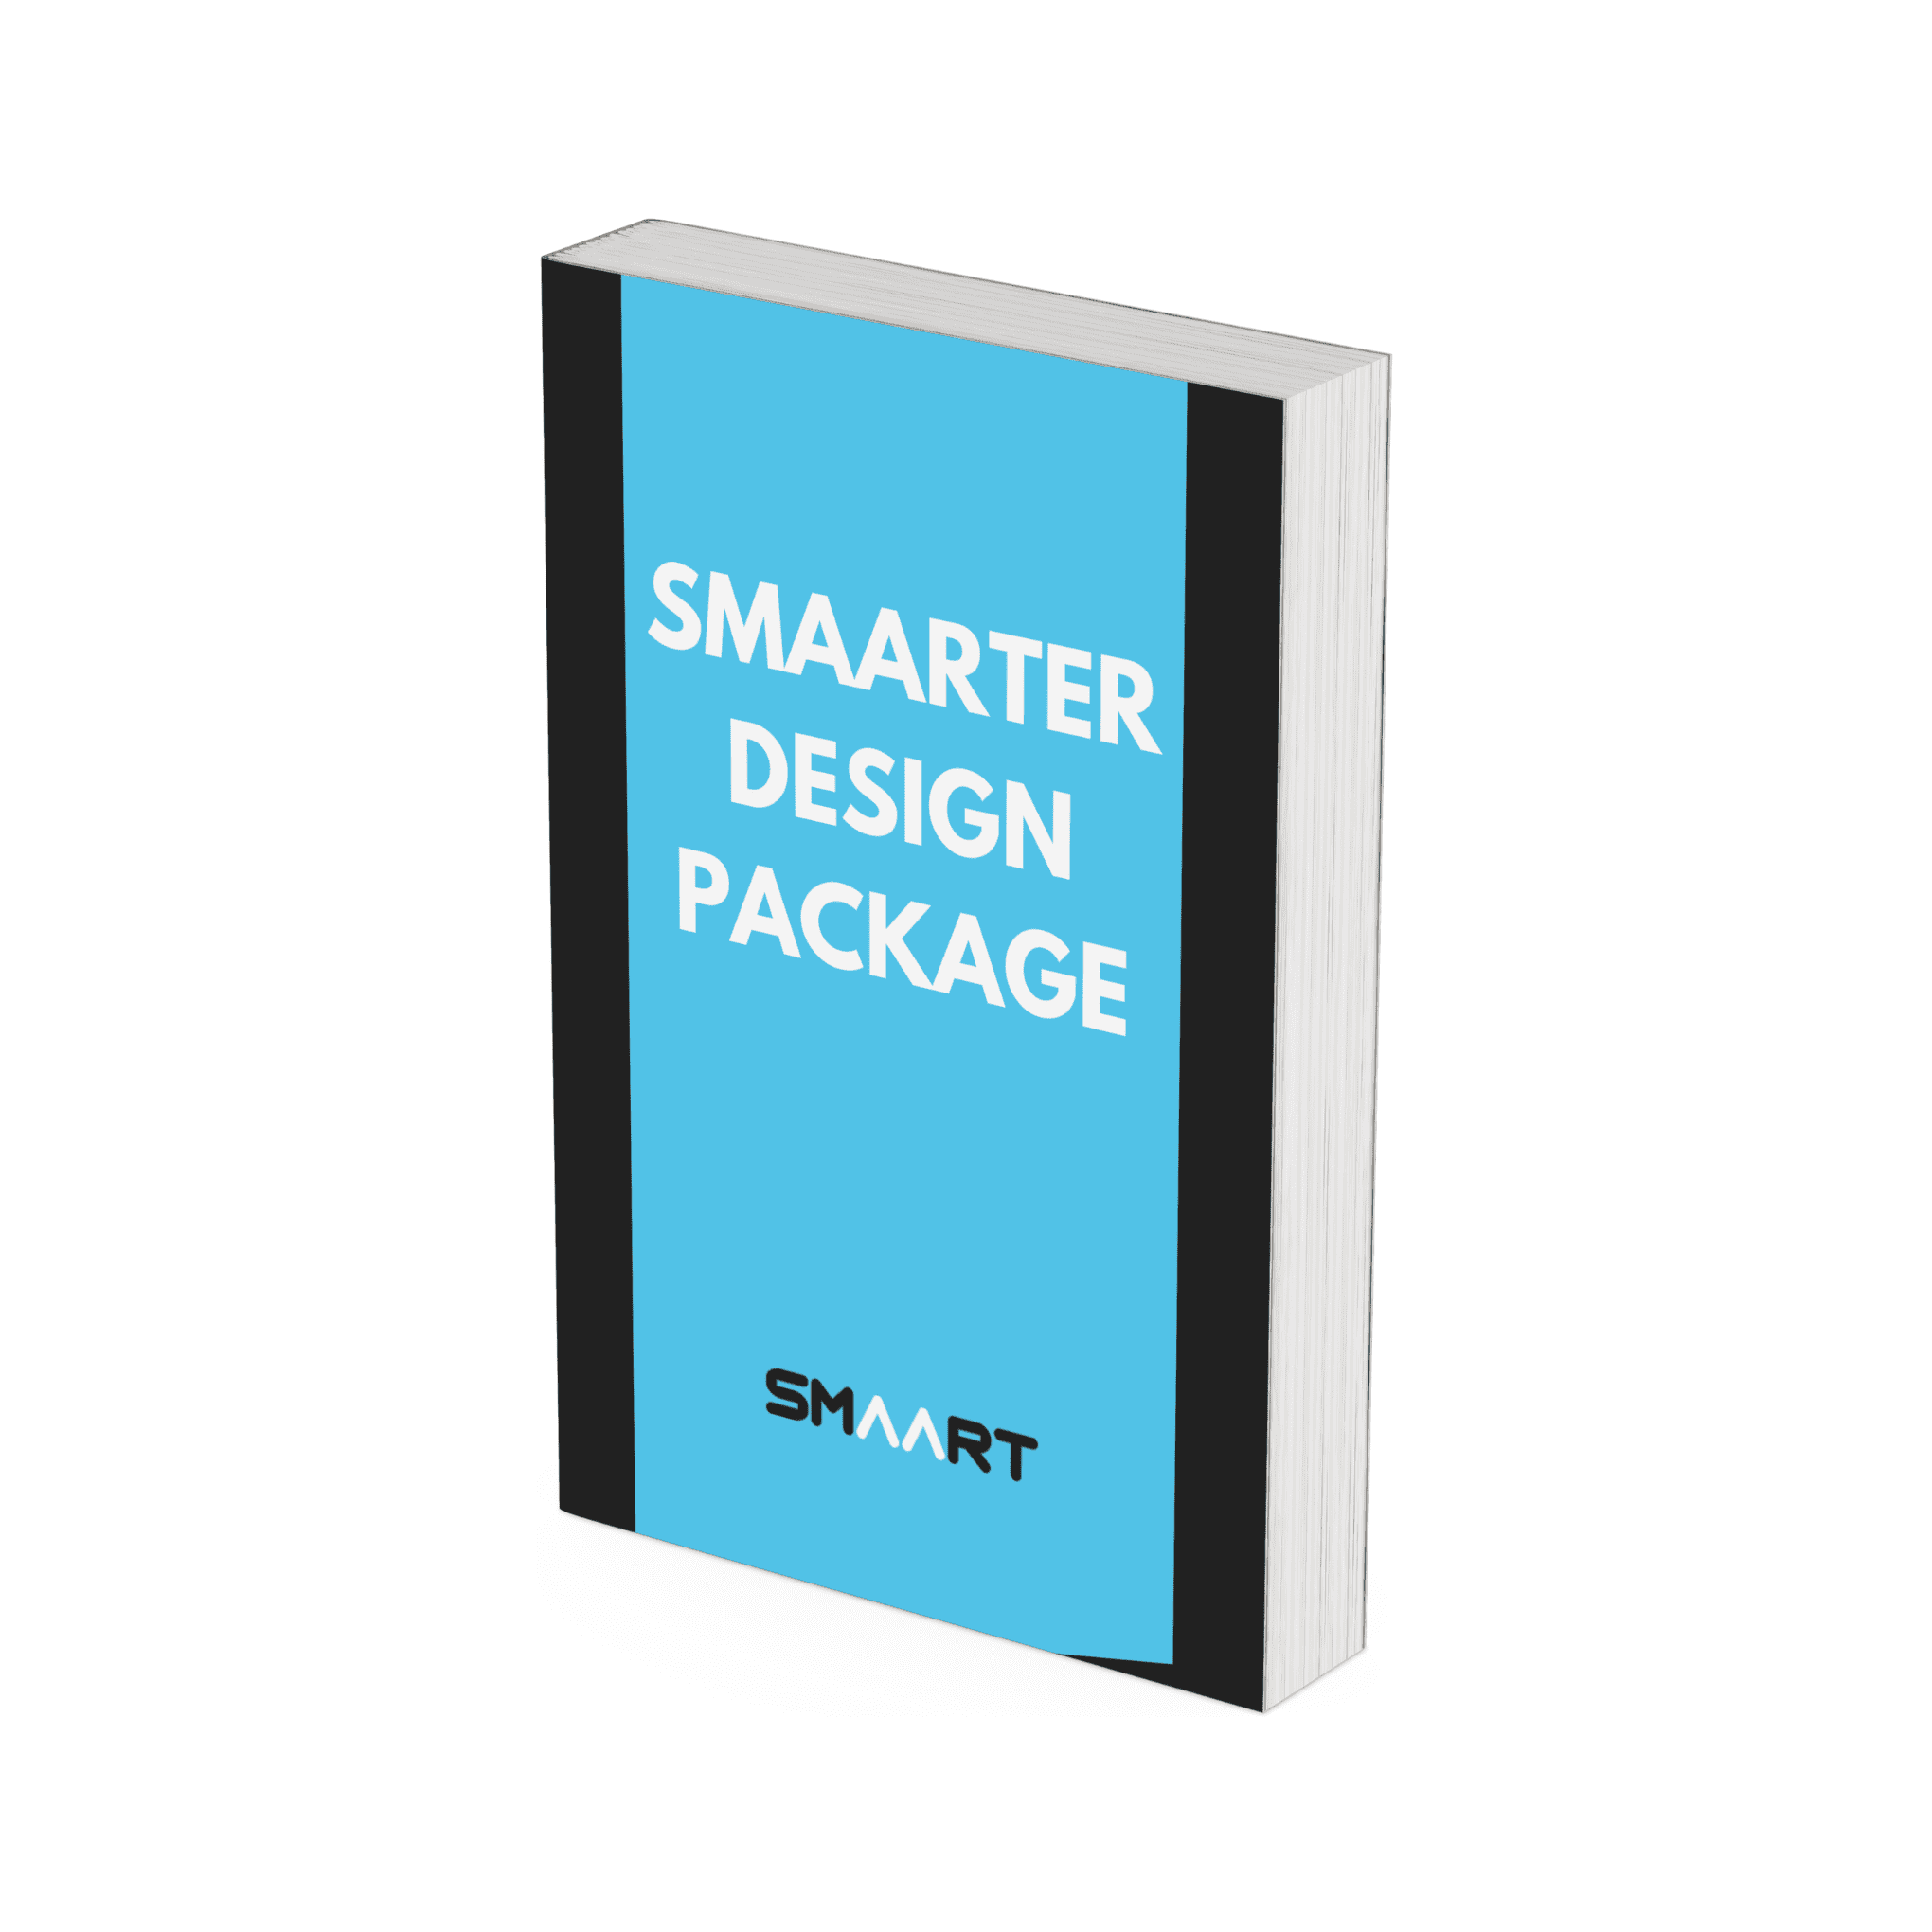 SMAARTER Design Package